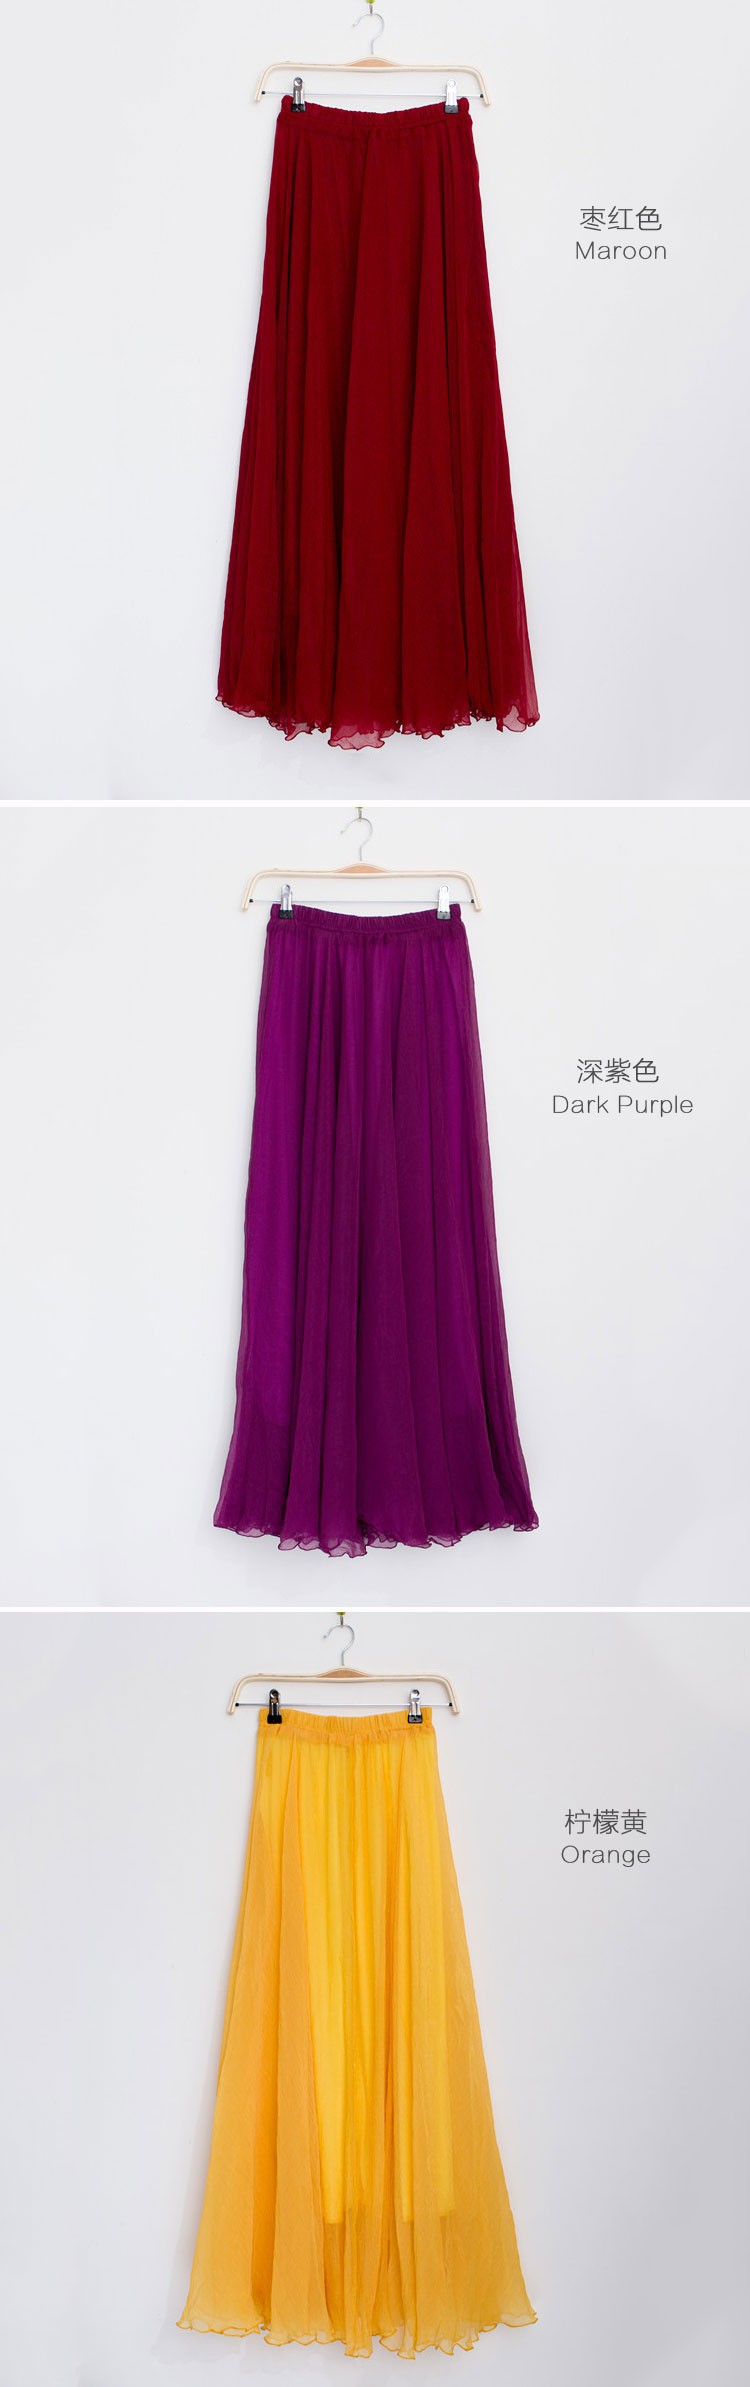 skirt (5)